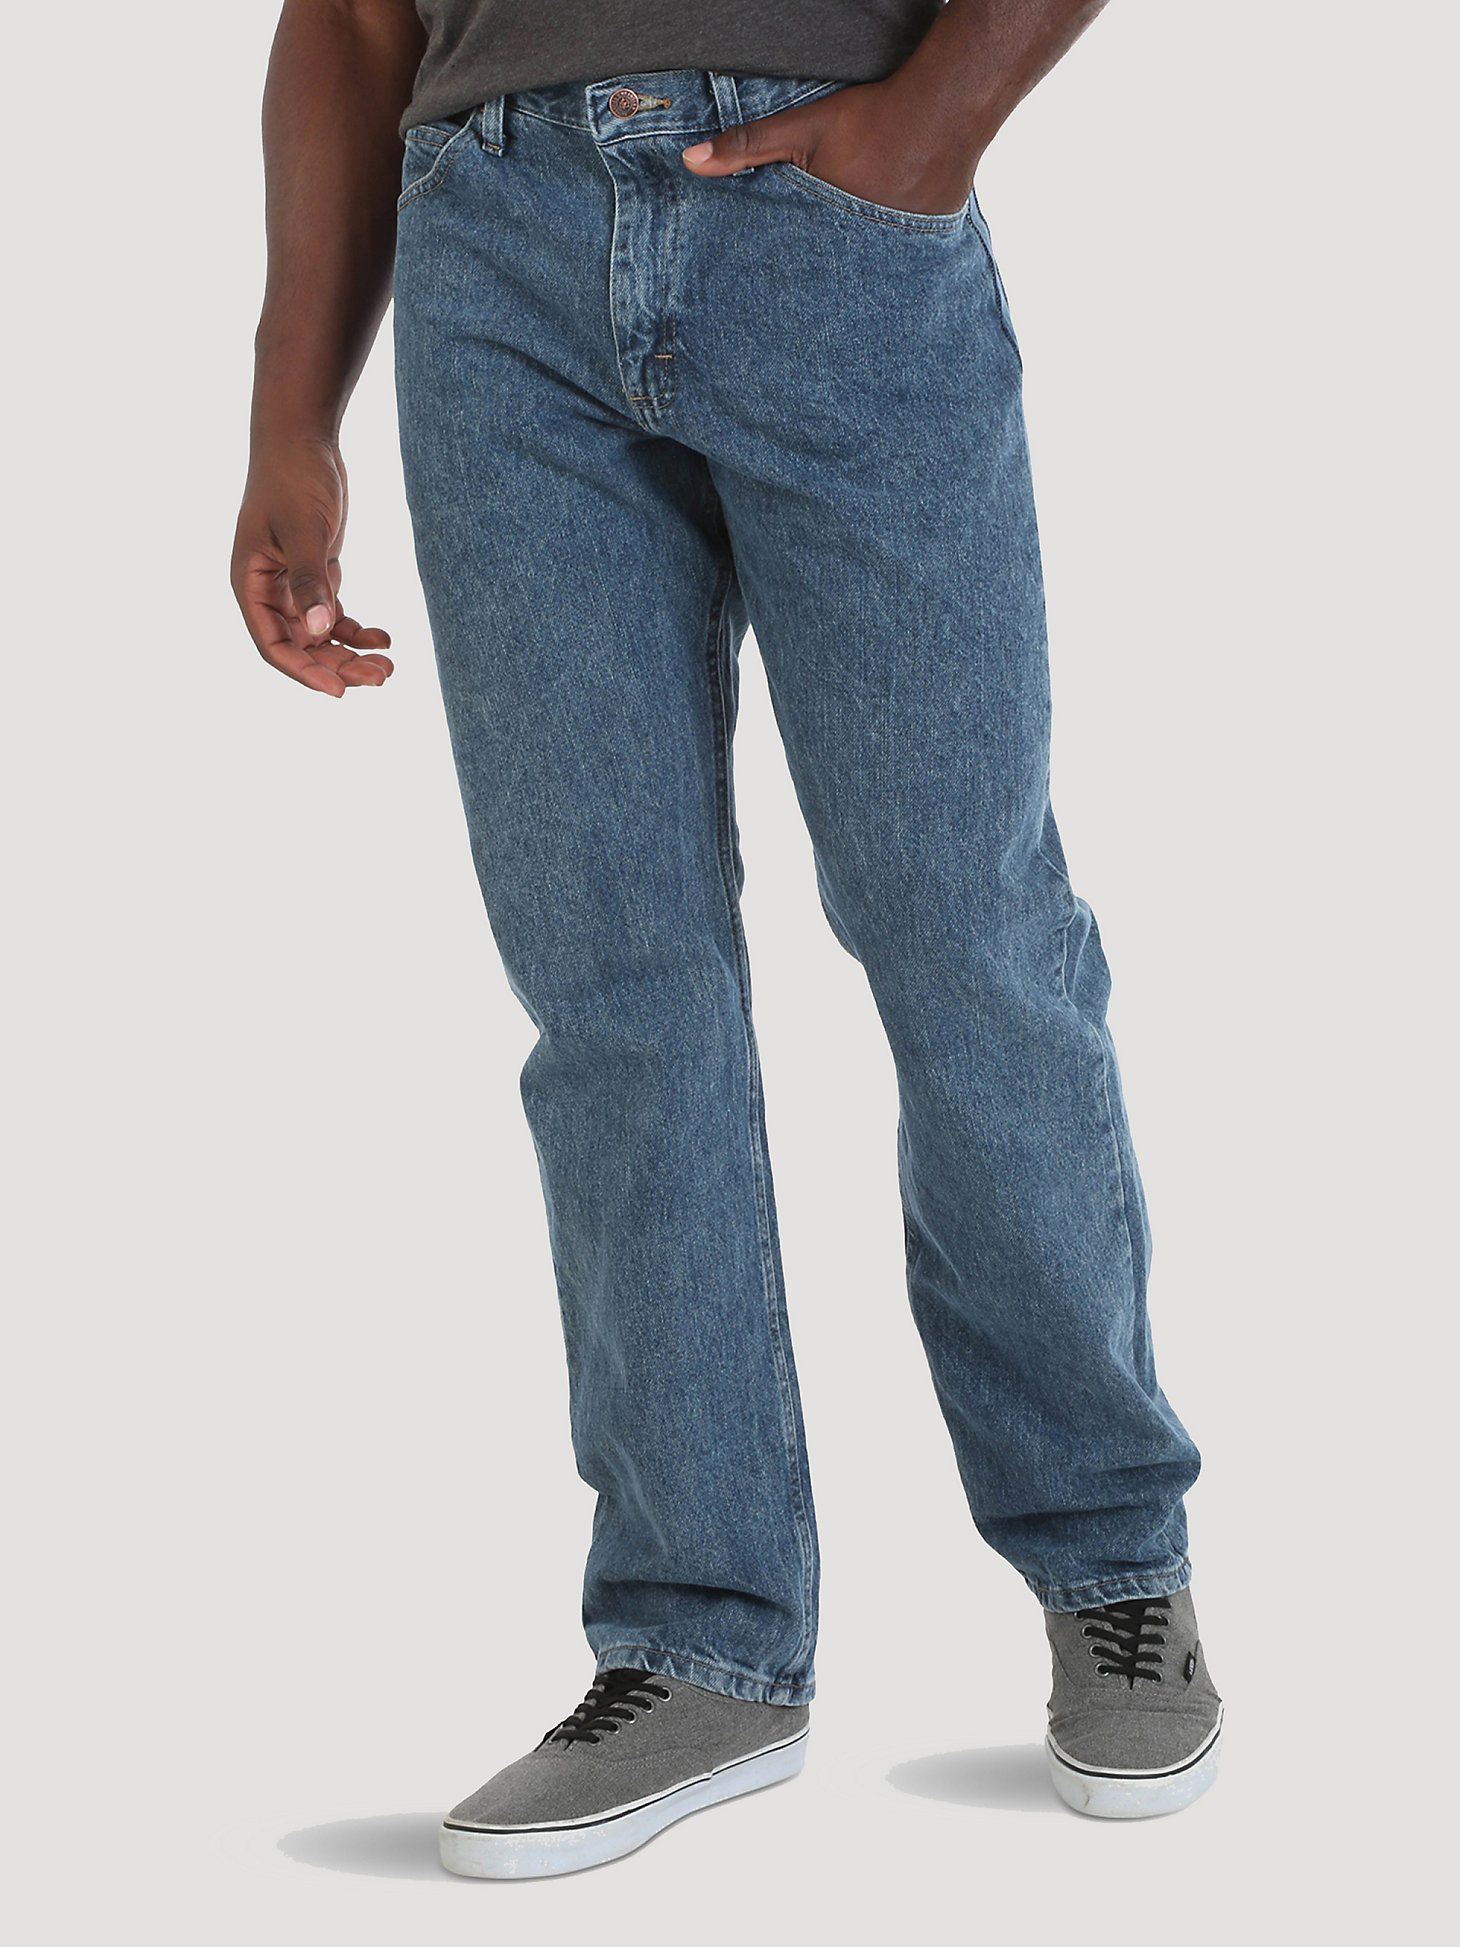 Arriba 97+ imagen relaxed fit mens wrangler jeans